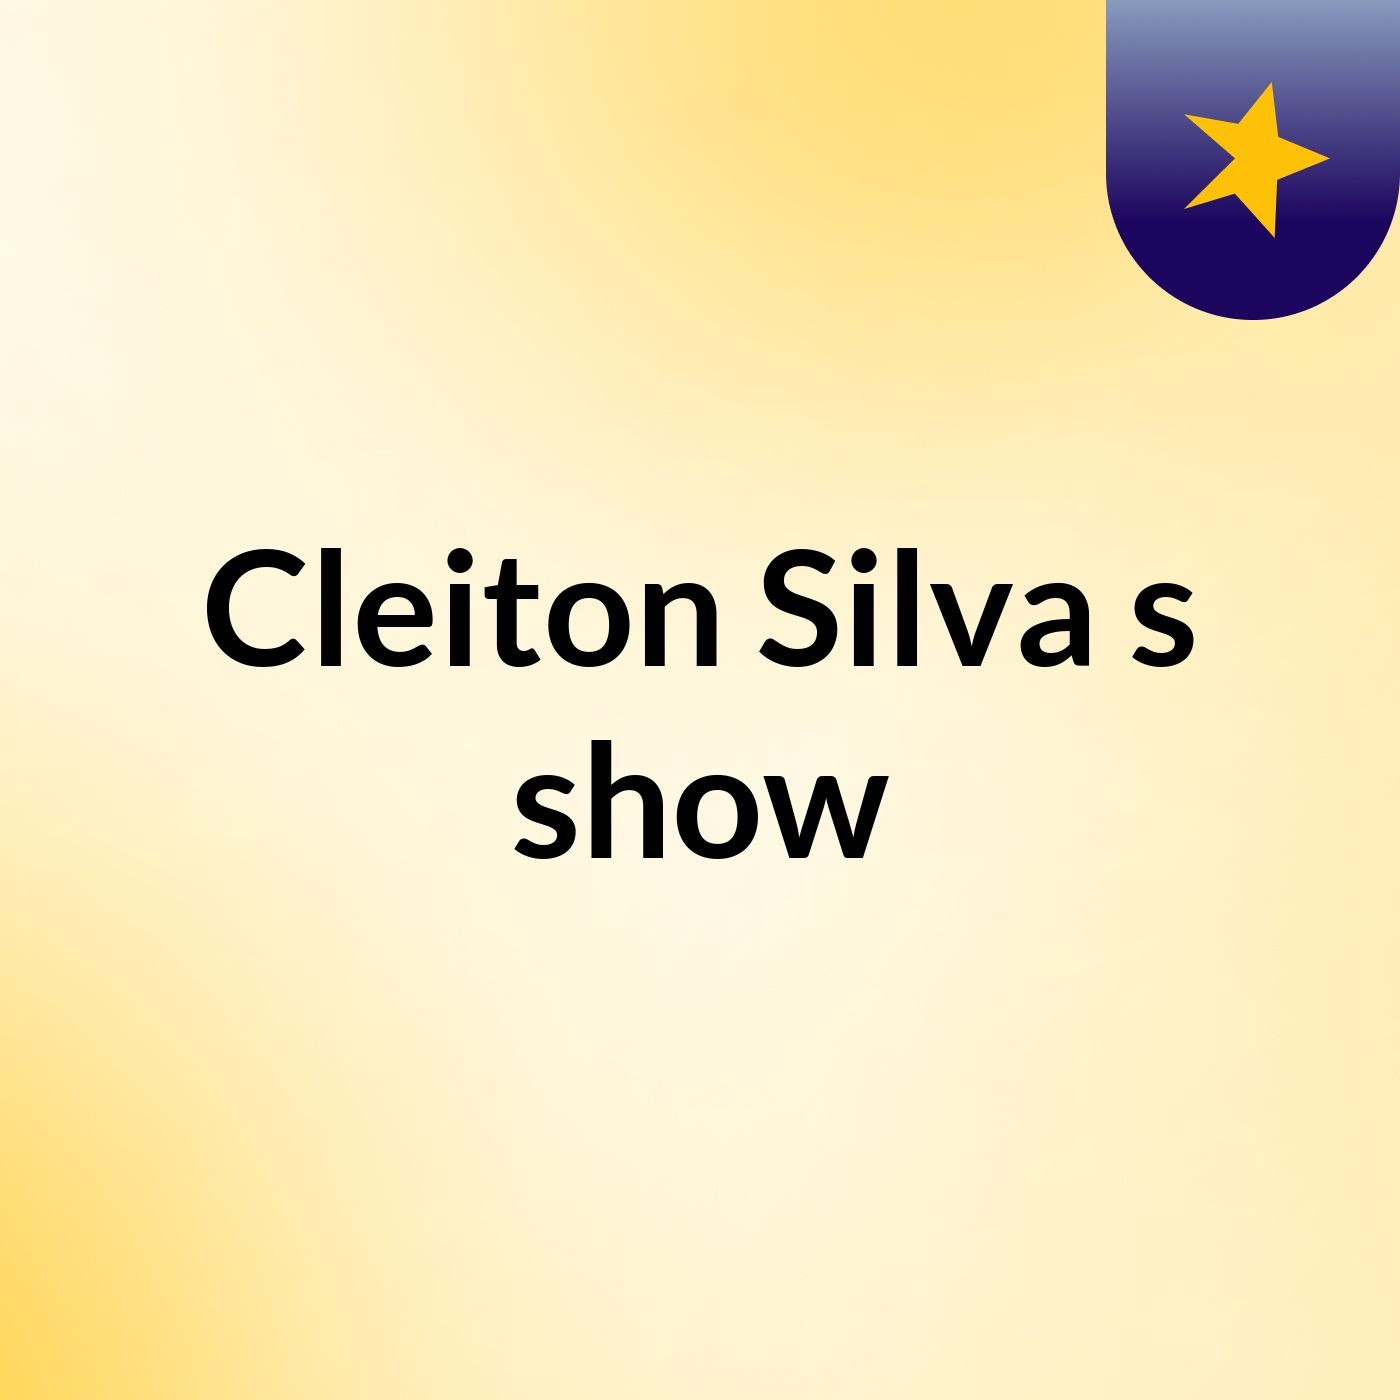 Cleiton Silva's show